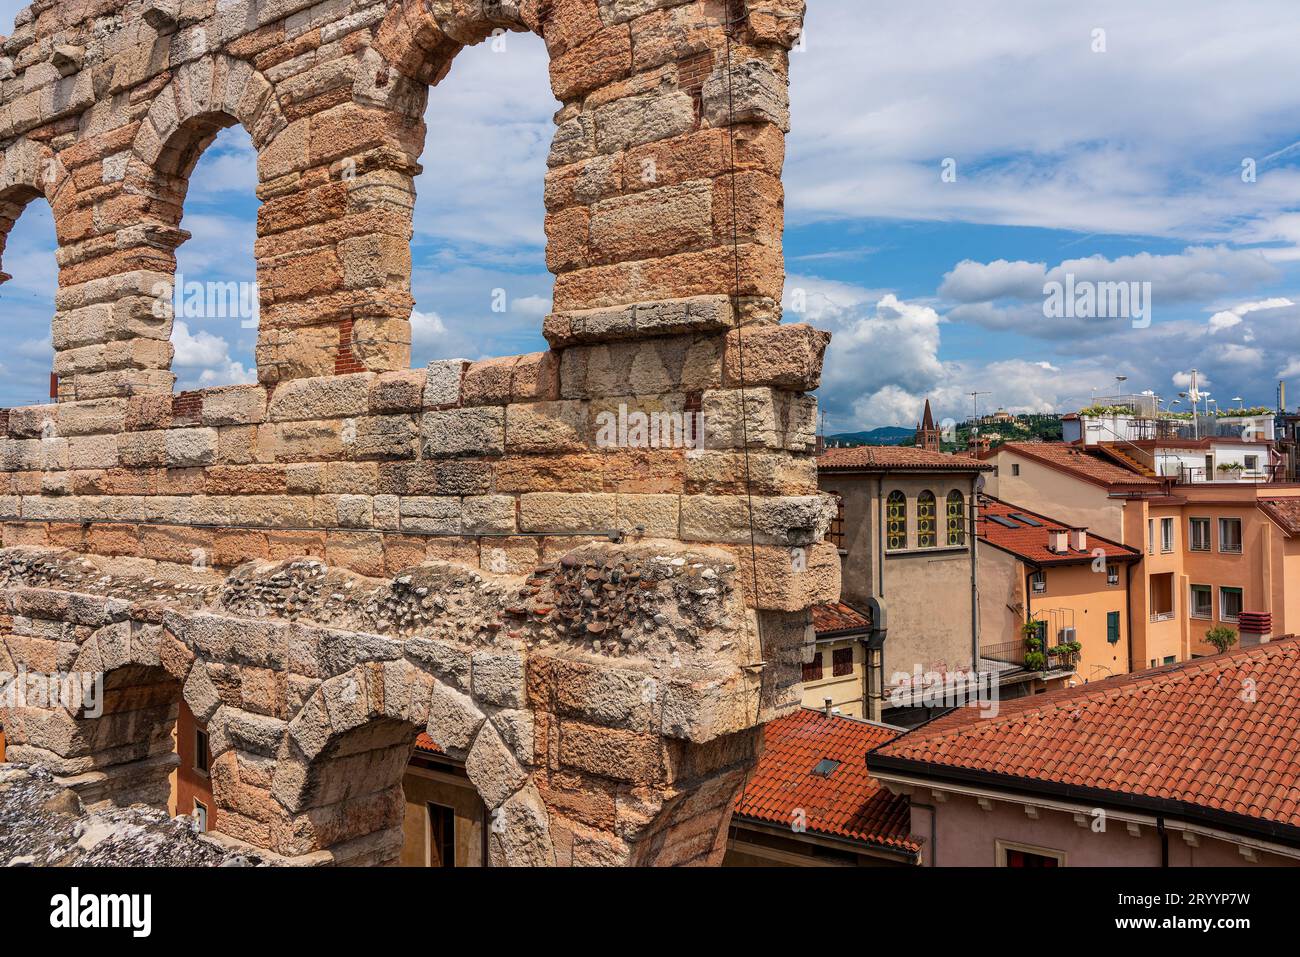 Vista panoramica dall'Arena sul centro storico di Verona in Italia. Foto Stock